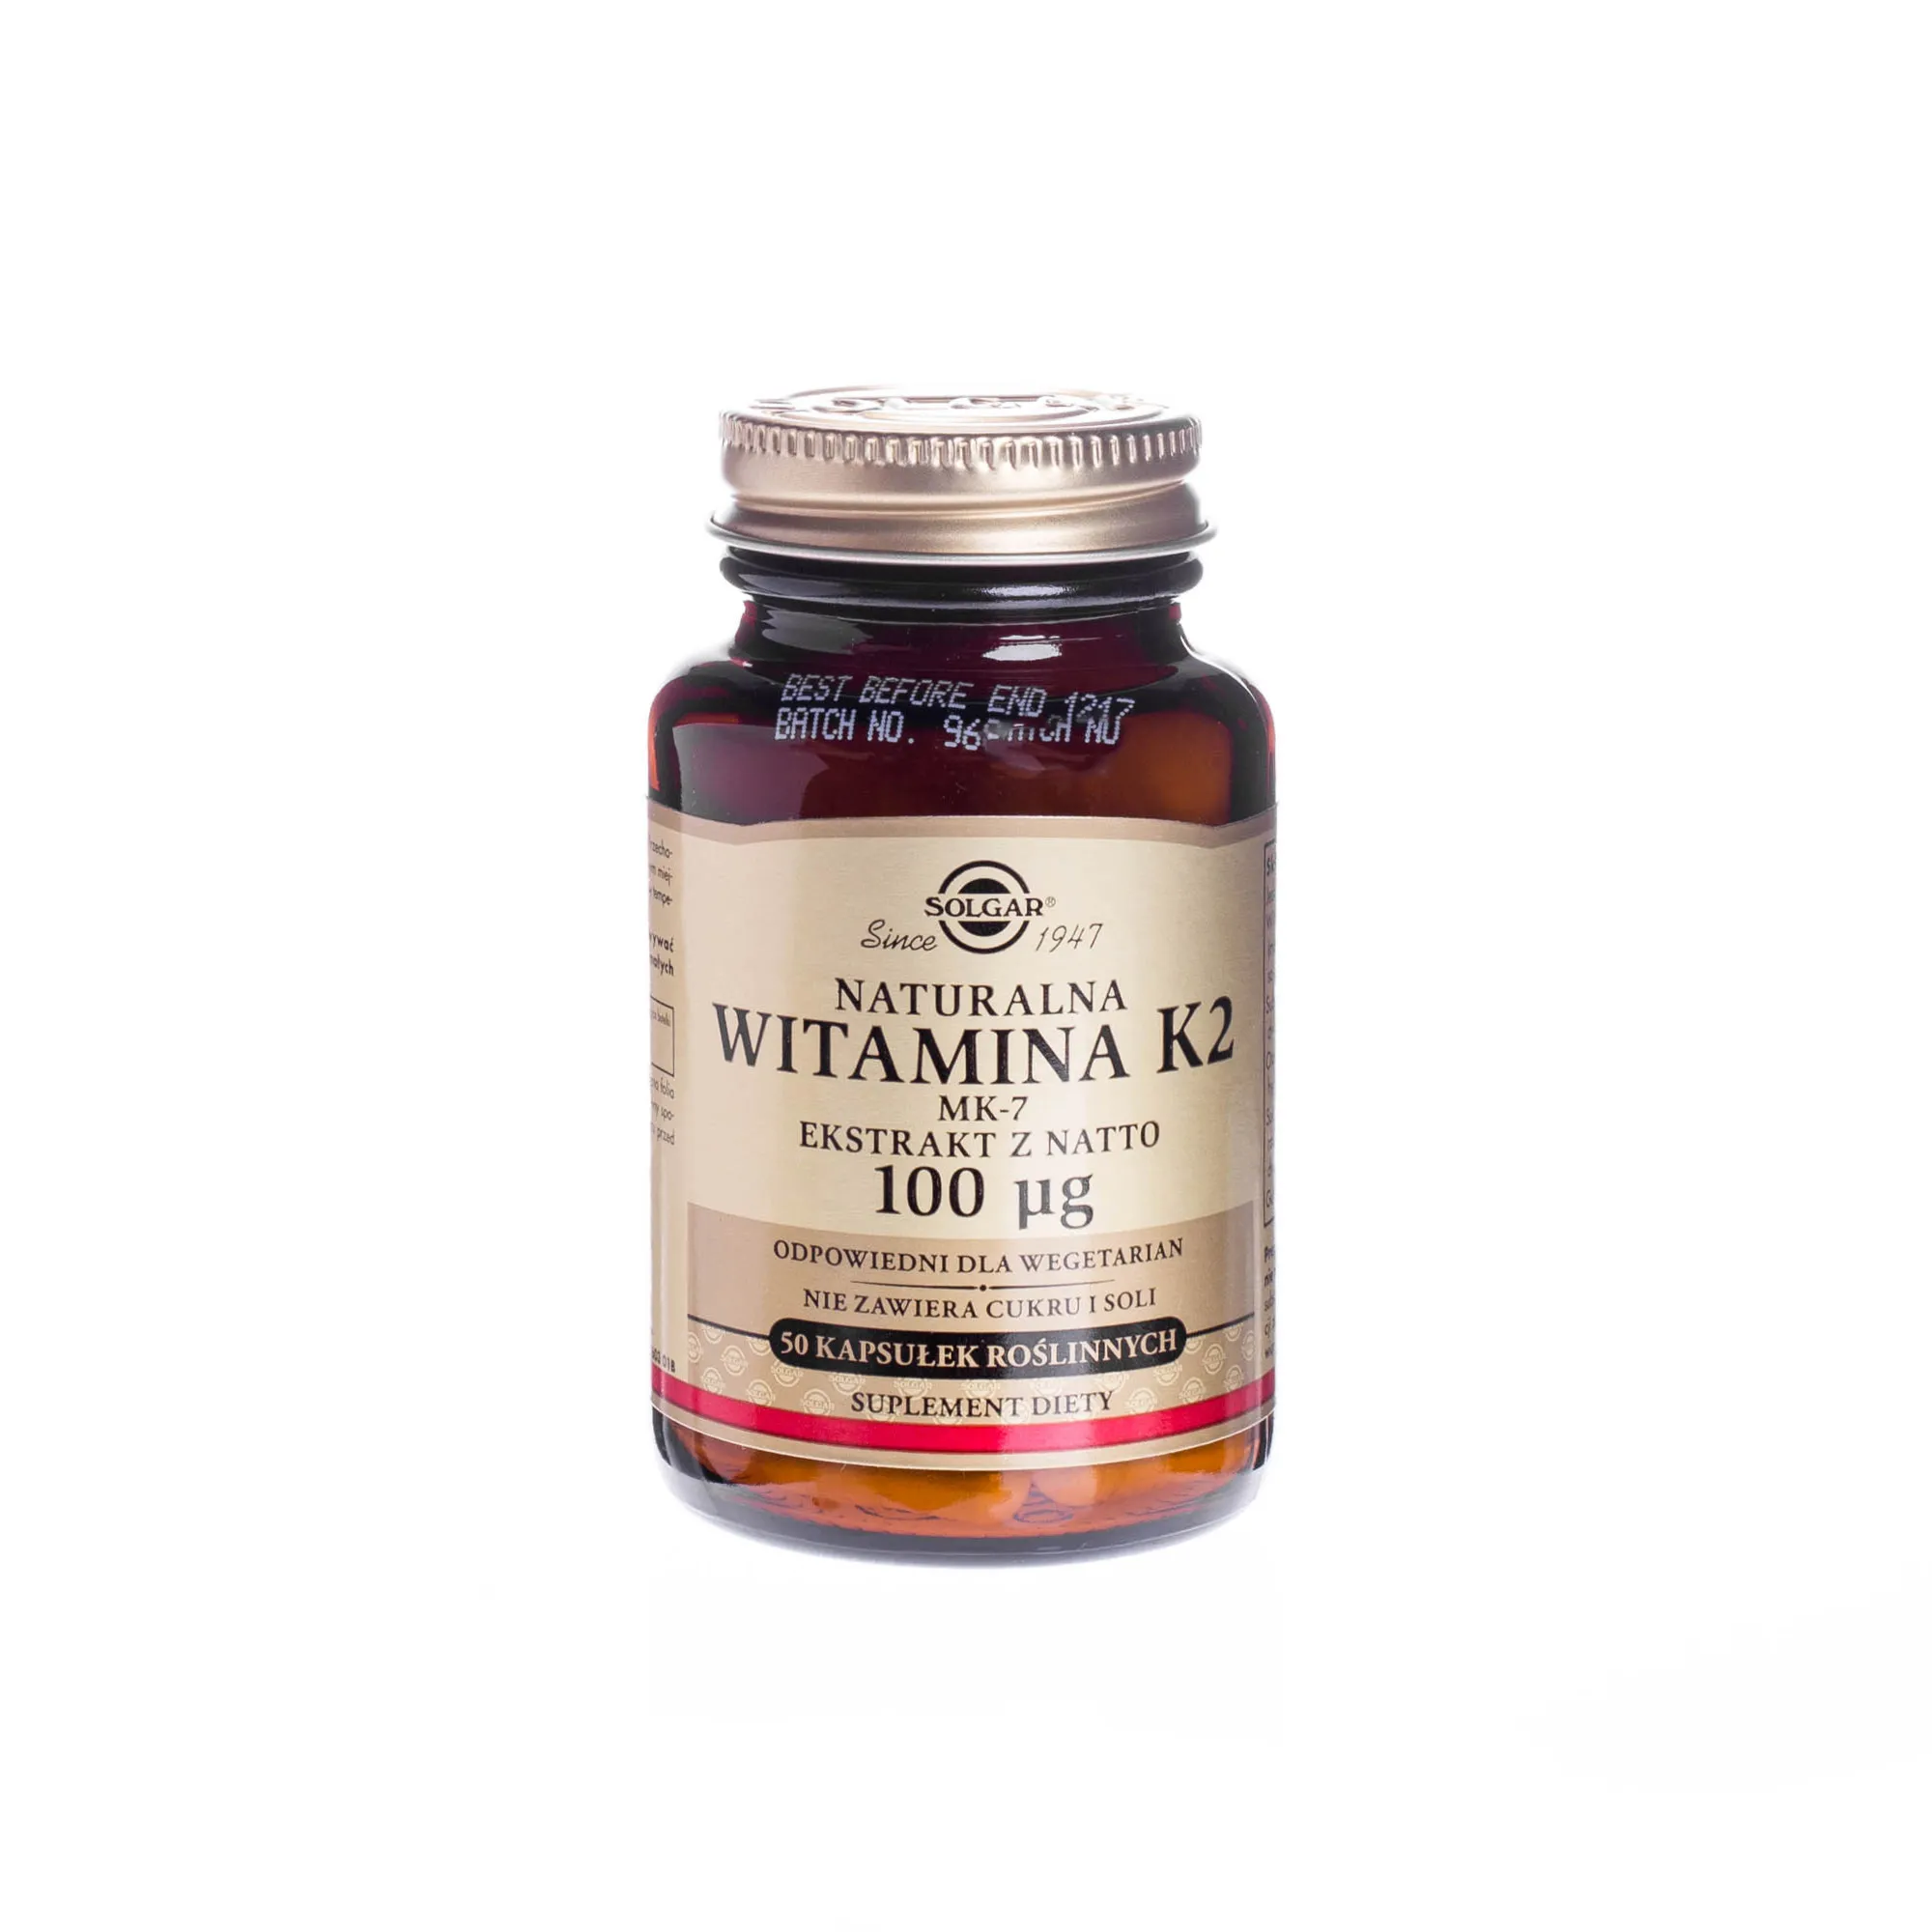 Solgar Naturalna Witamina K2, ekstrakt z natto 100 µg, suplement diety, 50 kapsułek roślinnych 